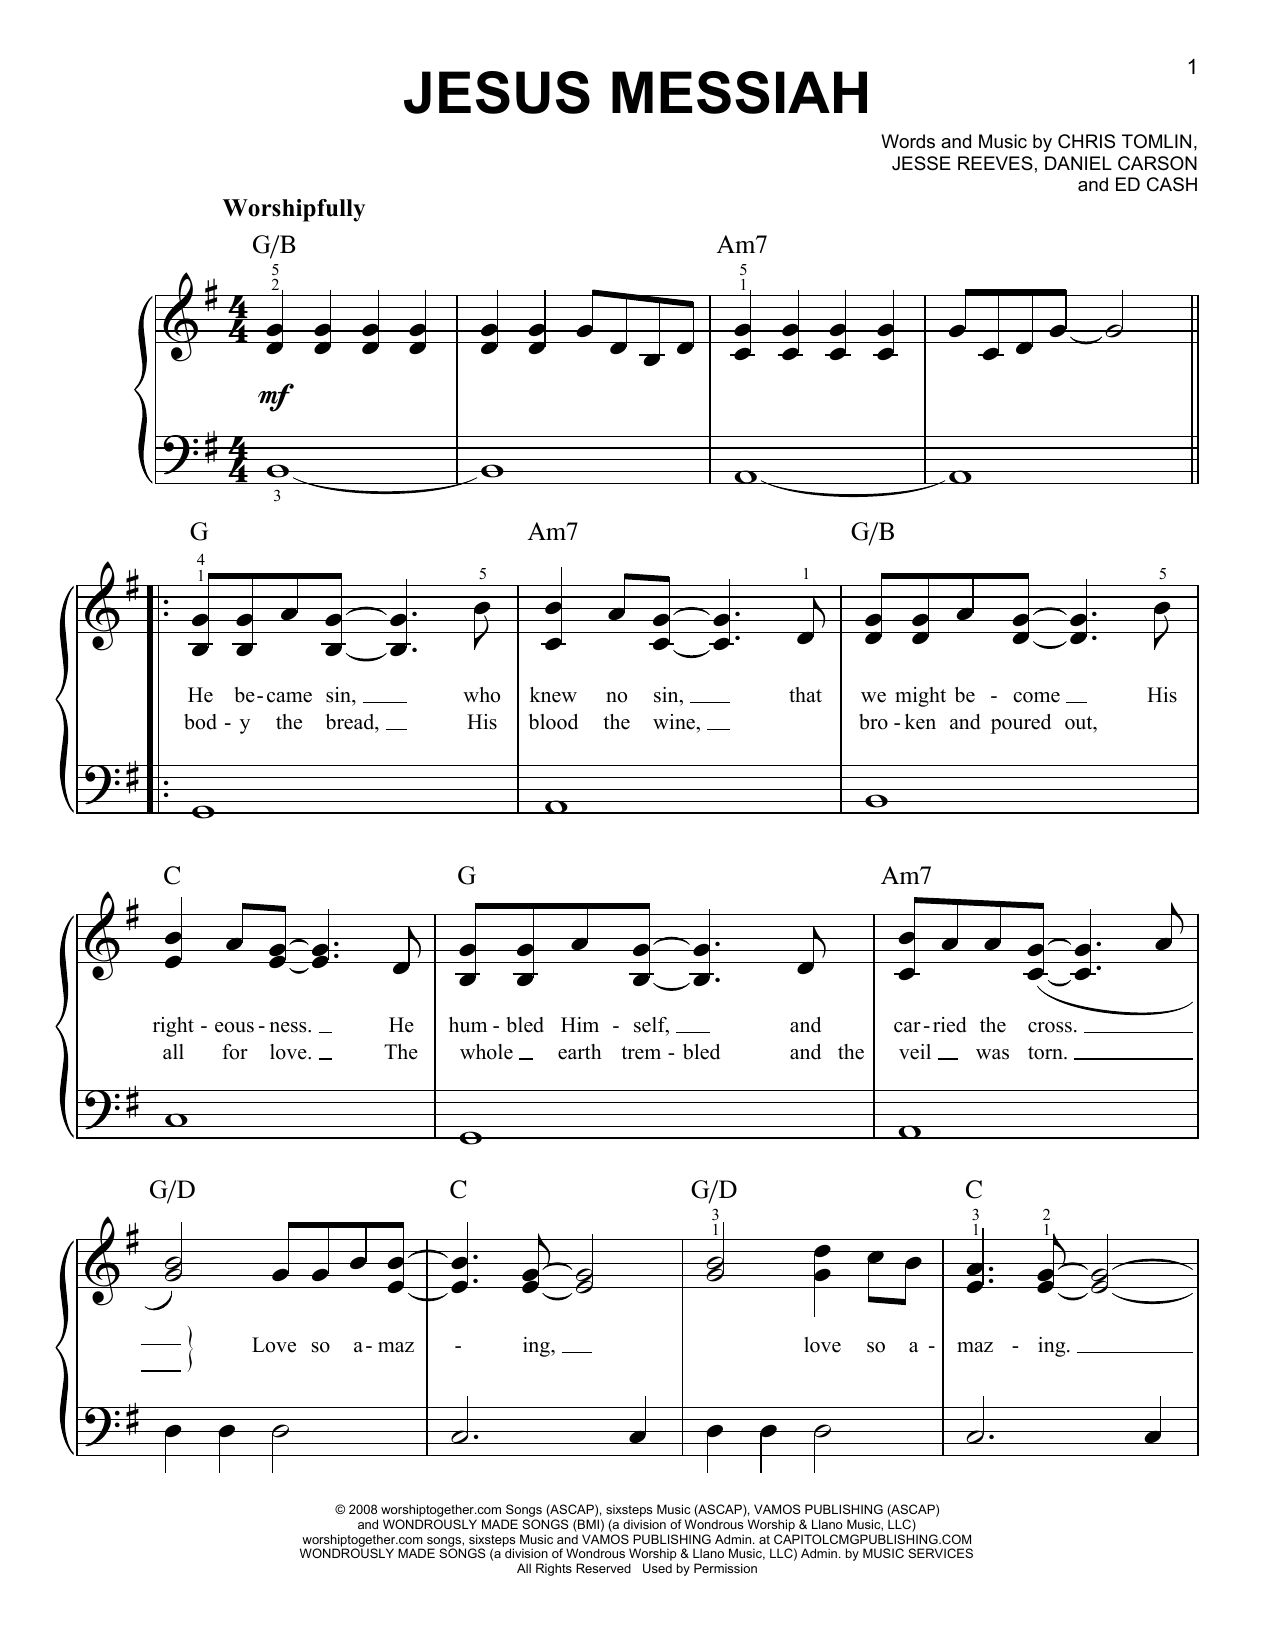 Chris Tomlin Jesus Messiah Sheet Music Notes & Chords for Ukulele - Download or Print PDF